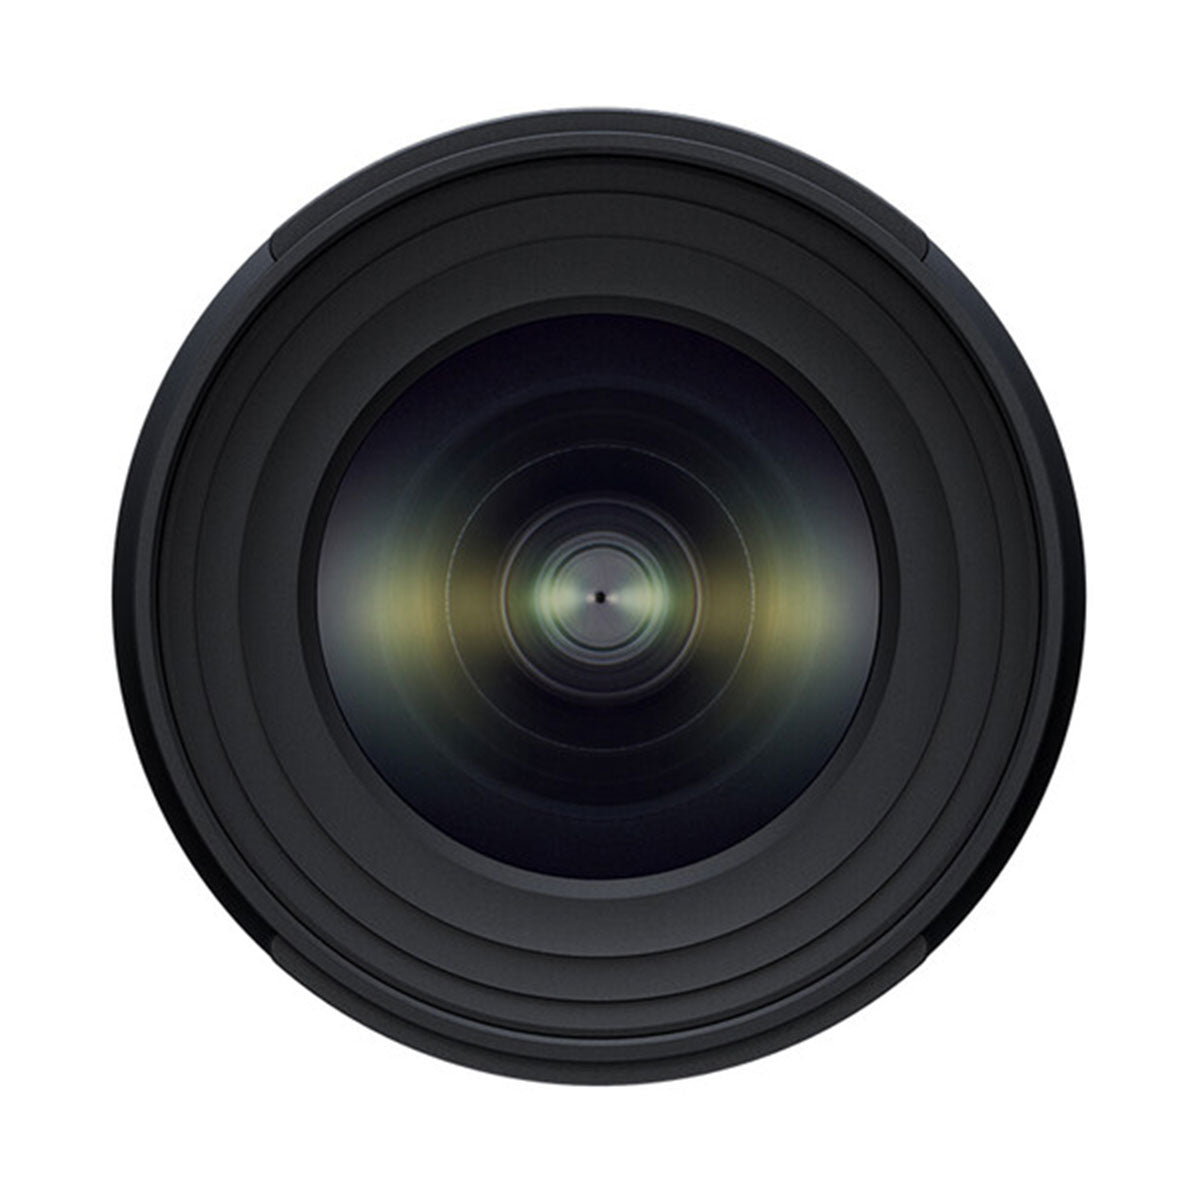 Tamron 11-20mm f/2.8 Di III-A RXD Lens for Sony E (APS-C)